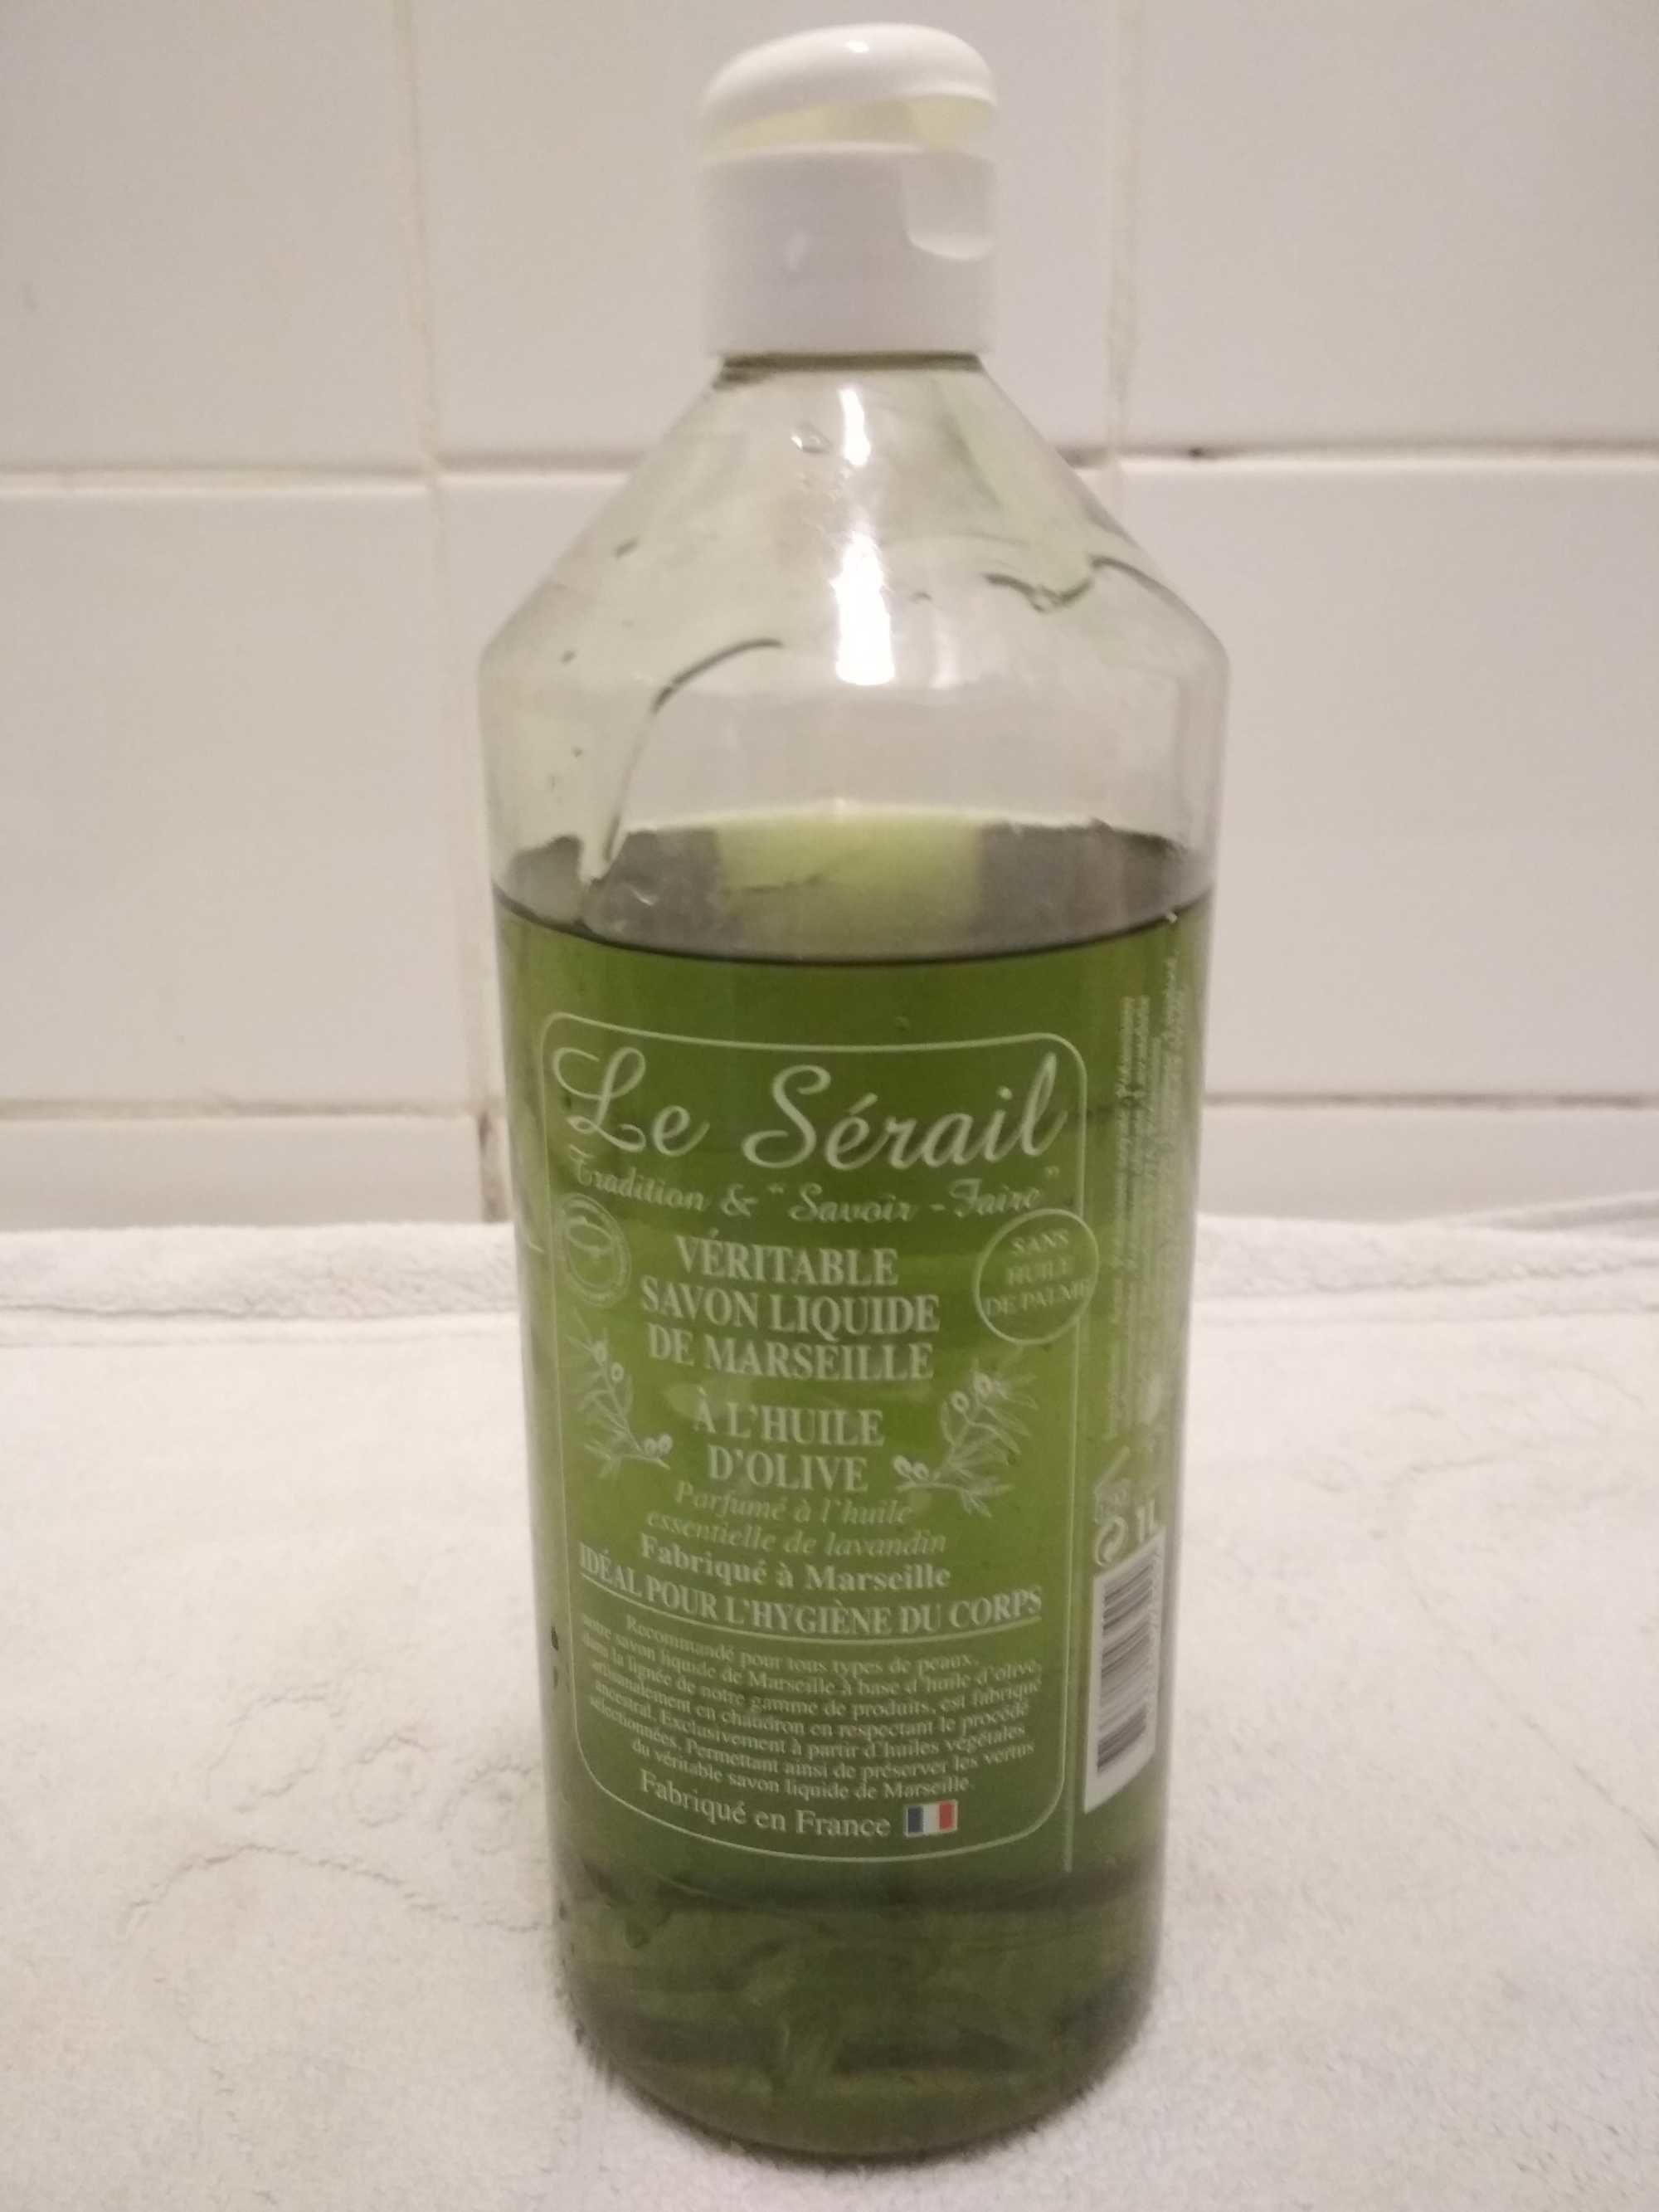 Véritable savon liquide de Marseille a l'huile d'olive Le Sérail - Produkt - fr